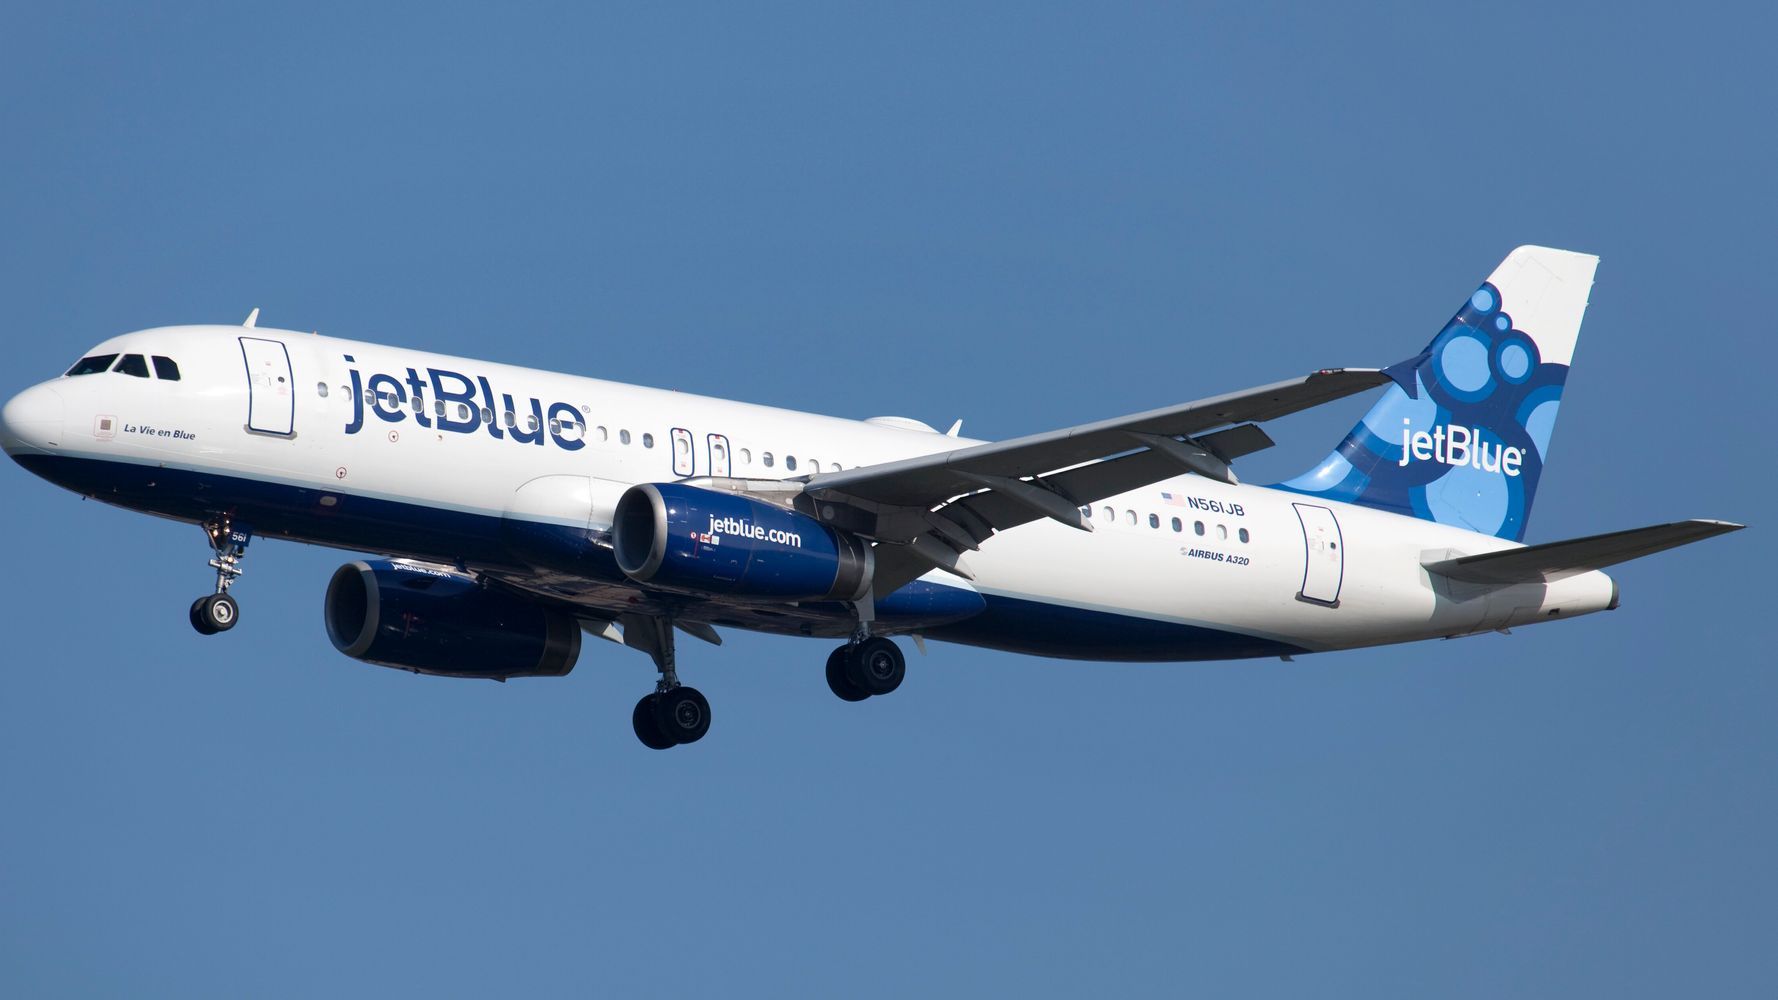 Full face maskless JetBlue passenger faces $ 14,500 fine